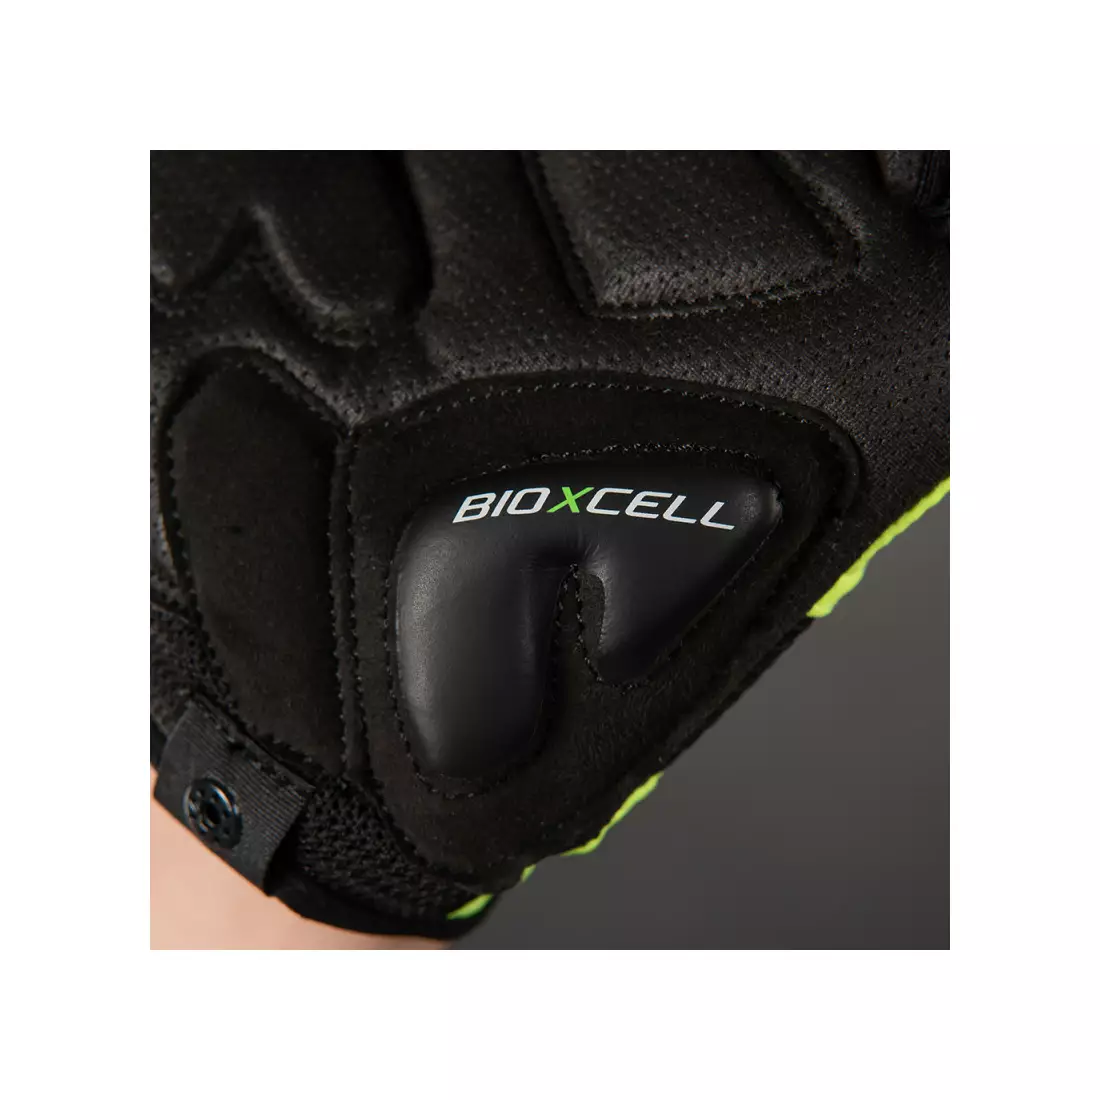 CHIBA mănuși de ciclism bioxcell galben neon 3060120